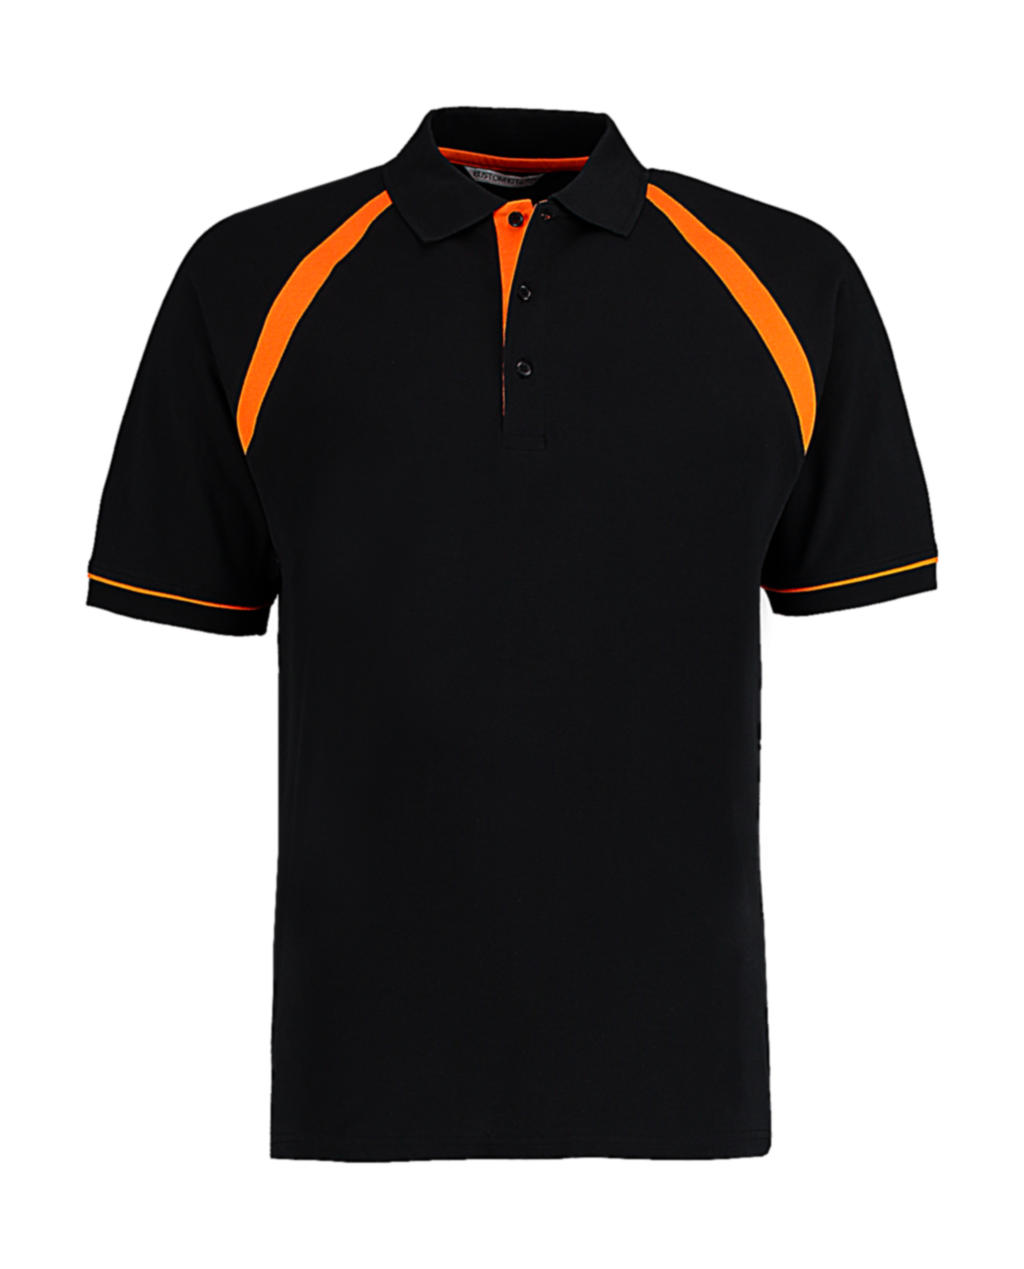  Classic Fit Oak Hill Polo in Farbe Black/Orange